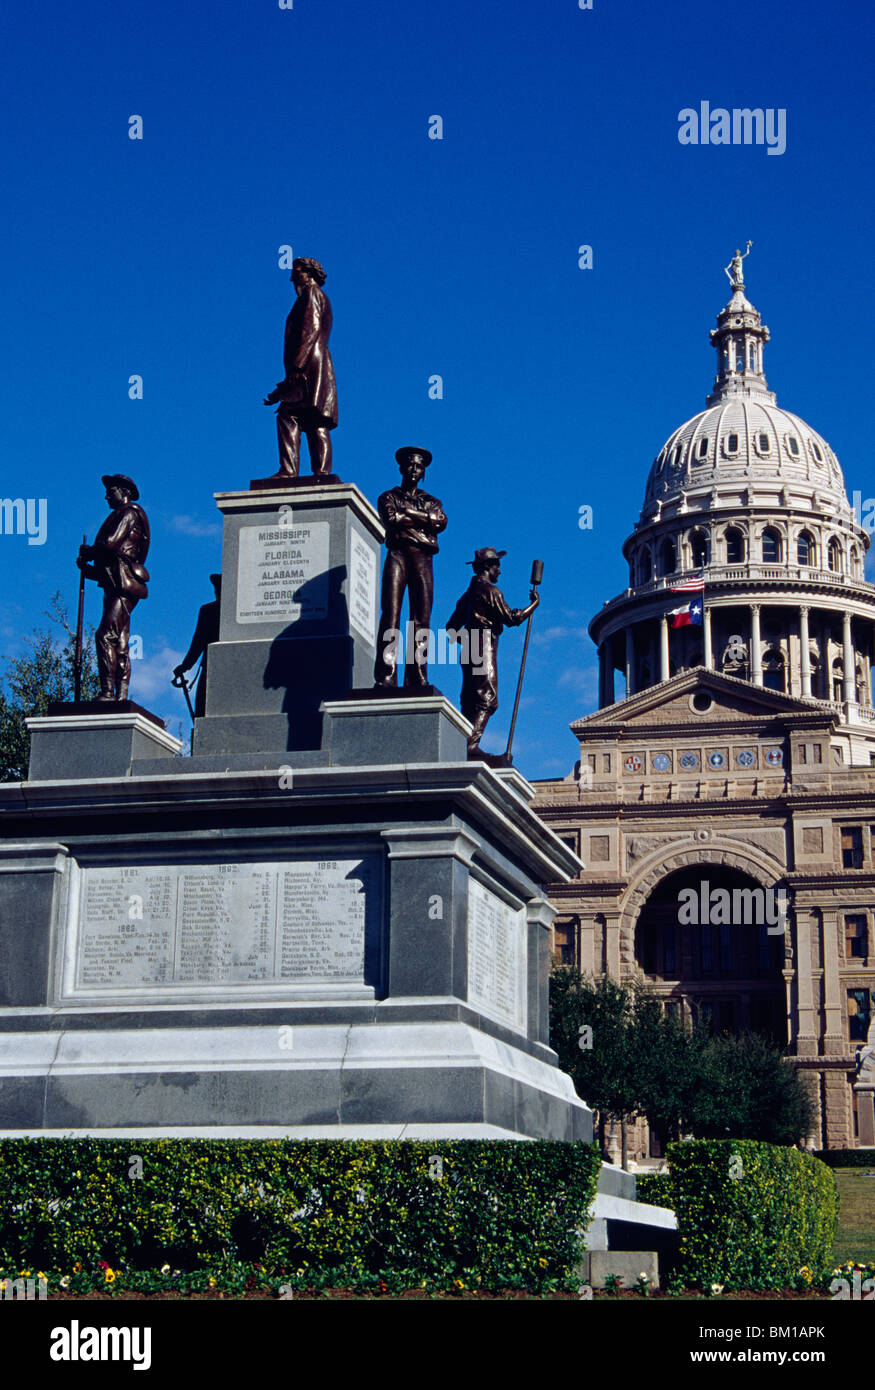 Monumento ai caduti in guerra con un governo edificio in background i soldati confederati Memorial Texas State Capitol Austin Texas USA Foto Stock